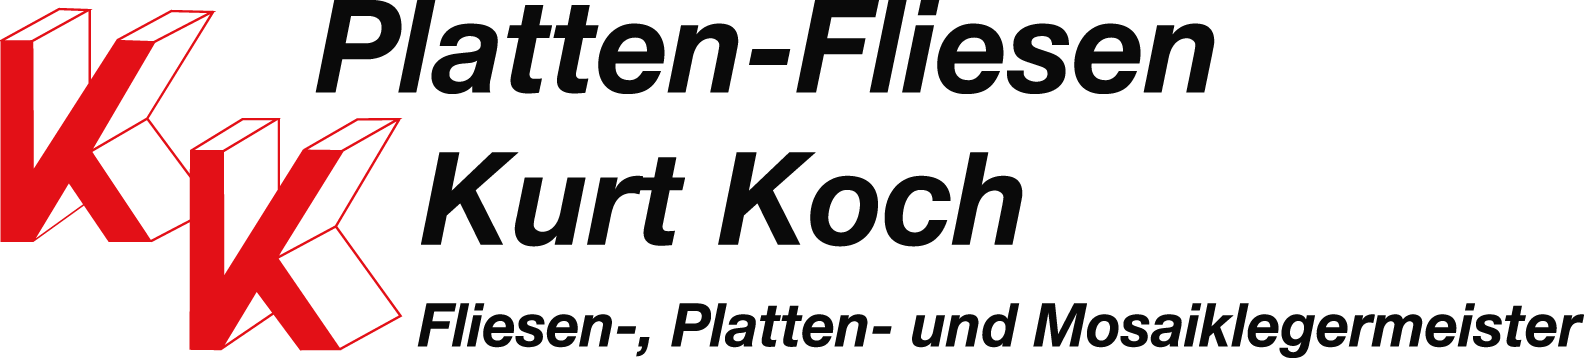 Platten-Fliesen Kurt Koch